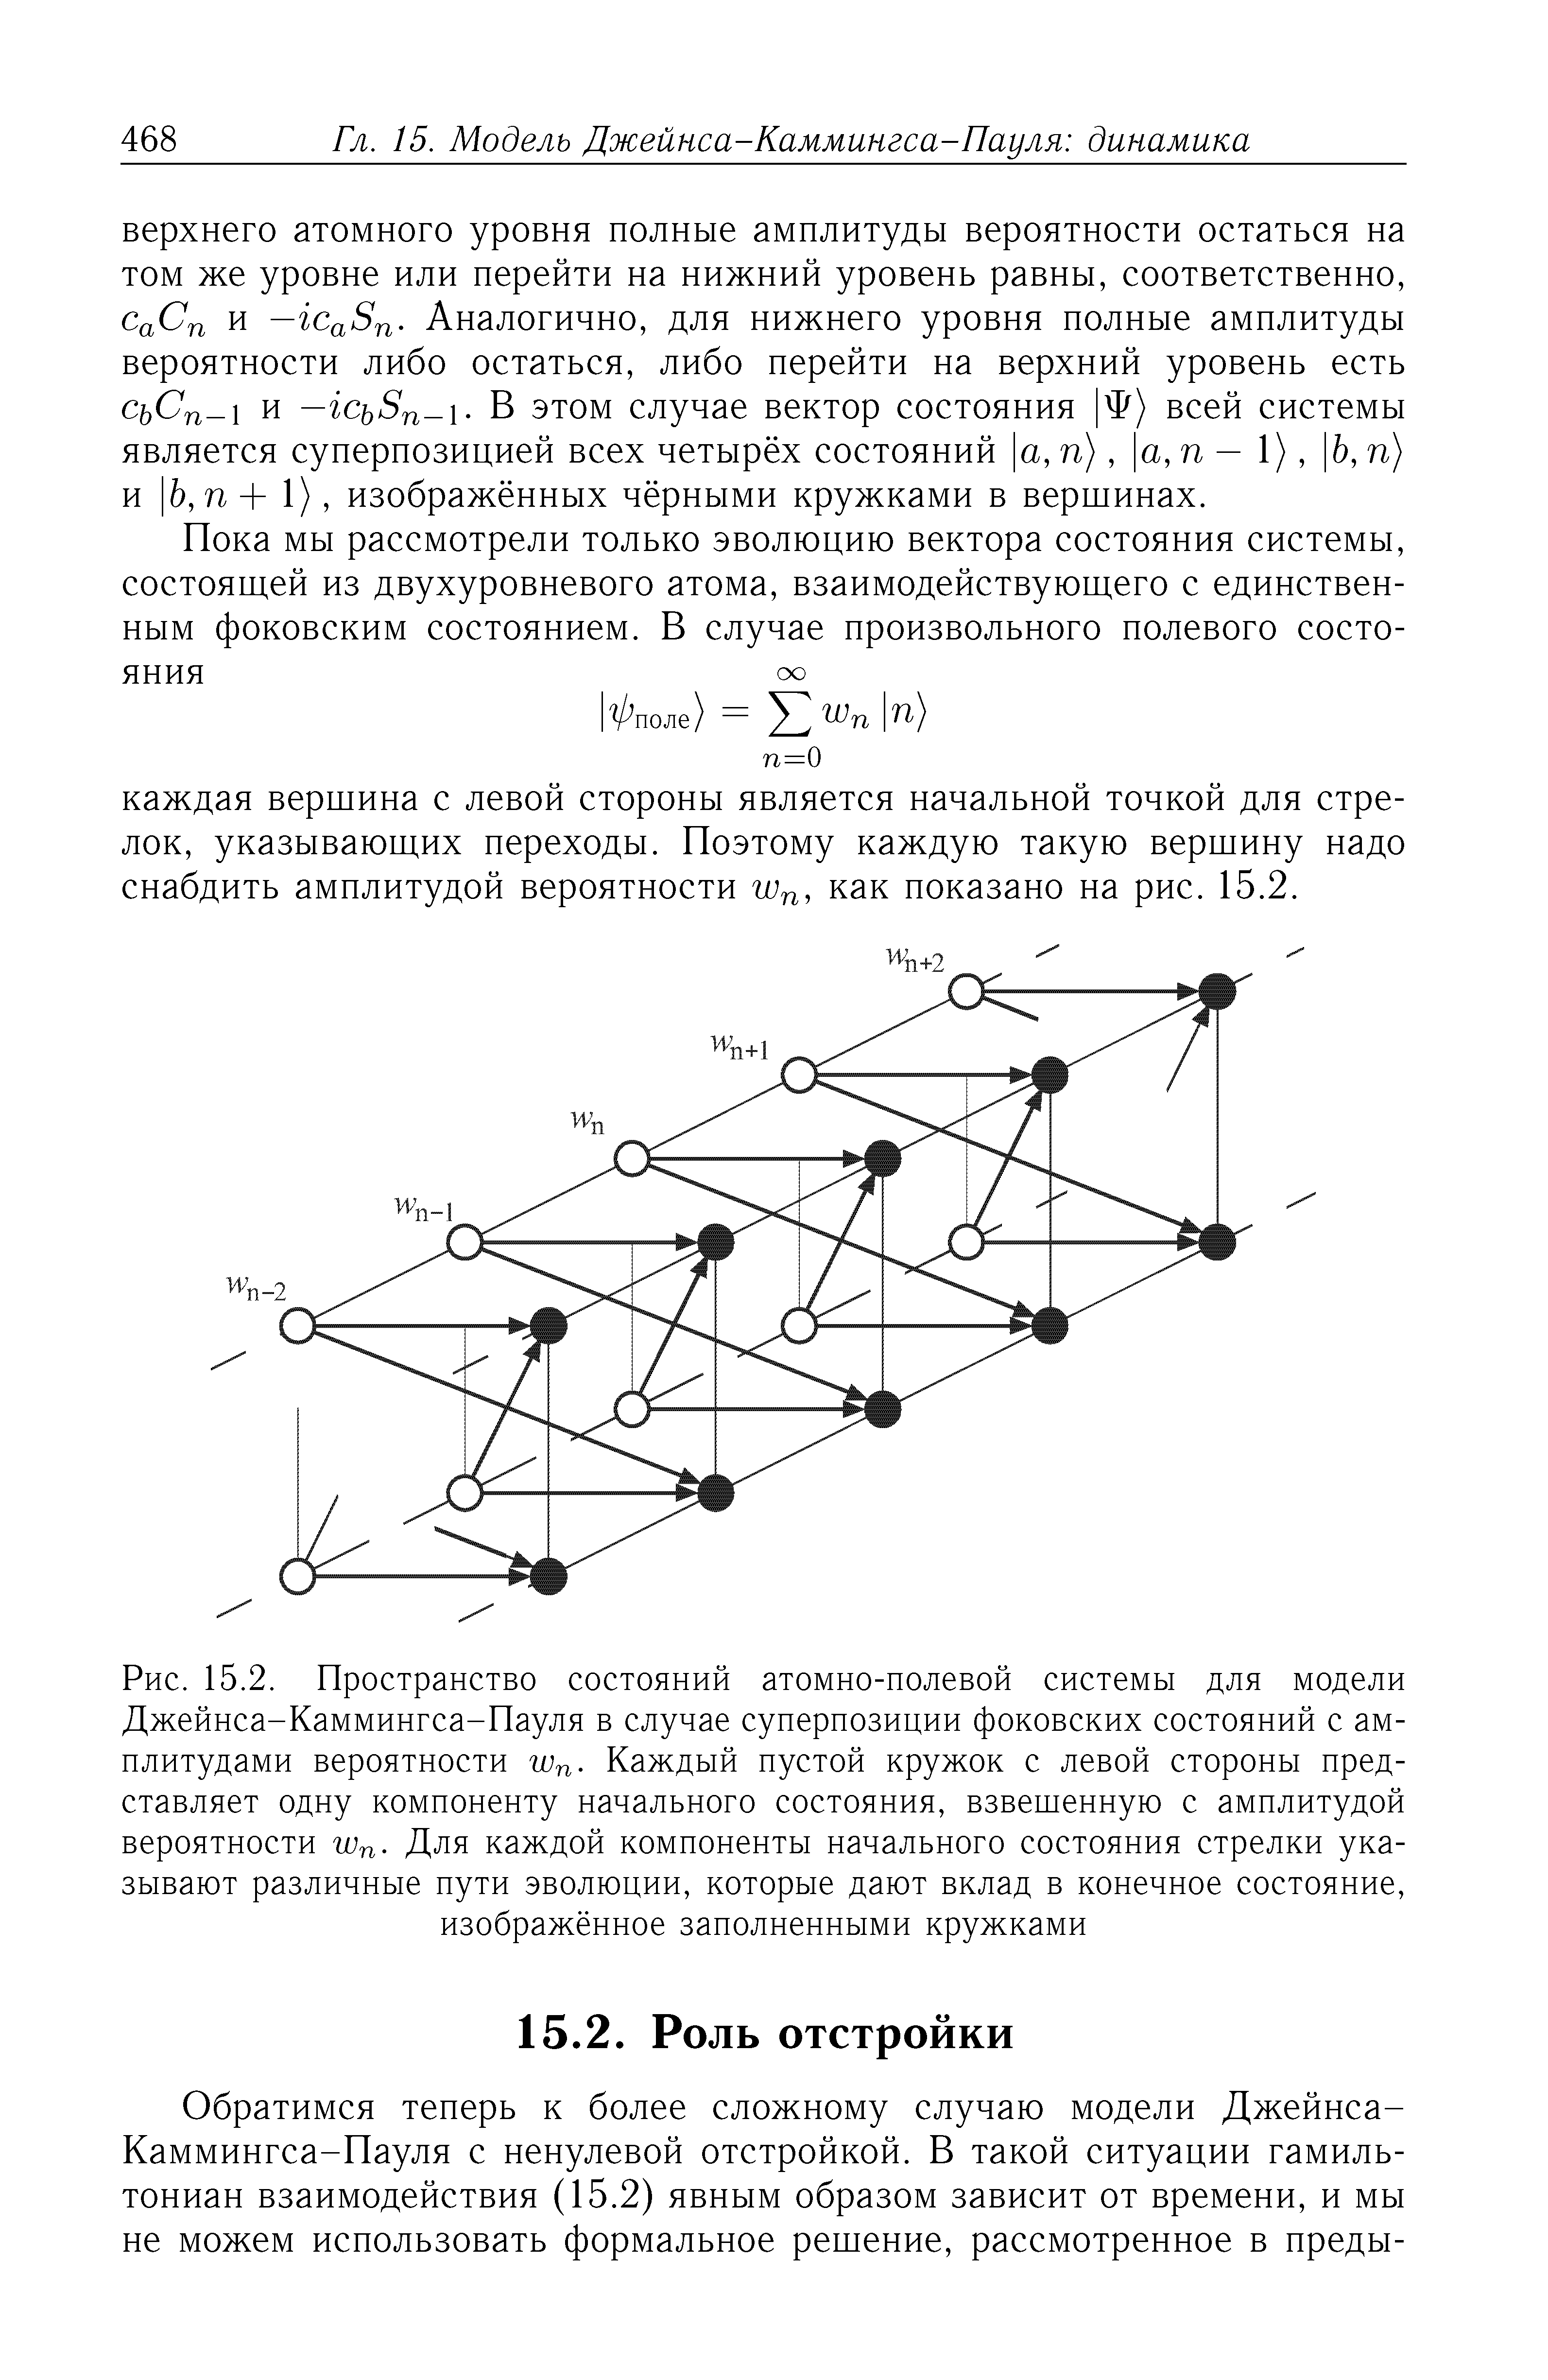 Рис. 15.2. <a href="/info/40382">Пространство состояний</a> атомно-полевой системы для модели Джейнса-Каммингса-Пауля в случае суперпозиции фоковских состояний с амплитудами вероятности гпп- Каждый пустой кружок с левой стороны представляет одну компоненту <a href="/info/31537">начального состояния</a>, взвешенную с амплитудой вероятности гпп- Для каждой компоненты <a href="/info/31537">начального состояния</a> стрелки указывают различные пути эволюции, которые дают вклад в конечное состояние,
